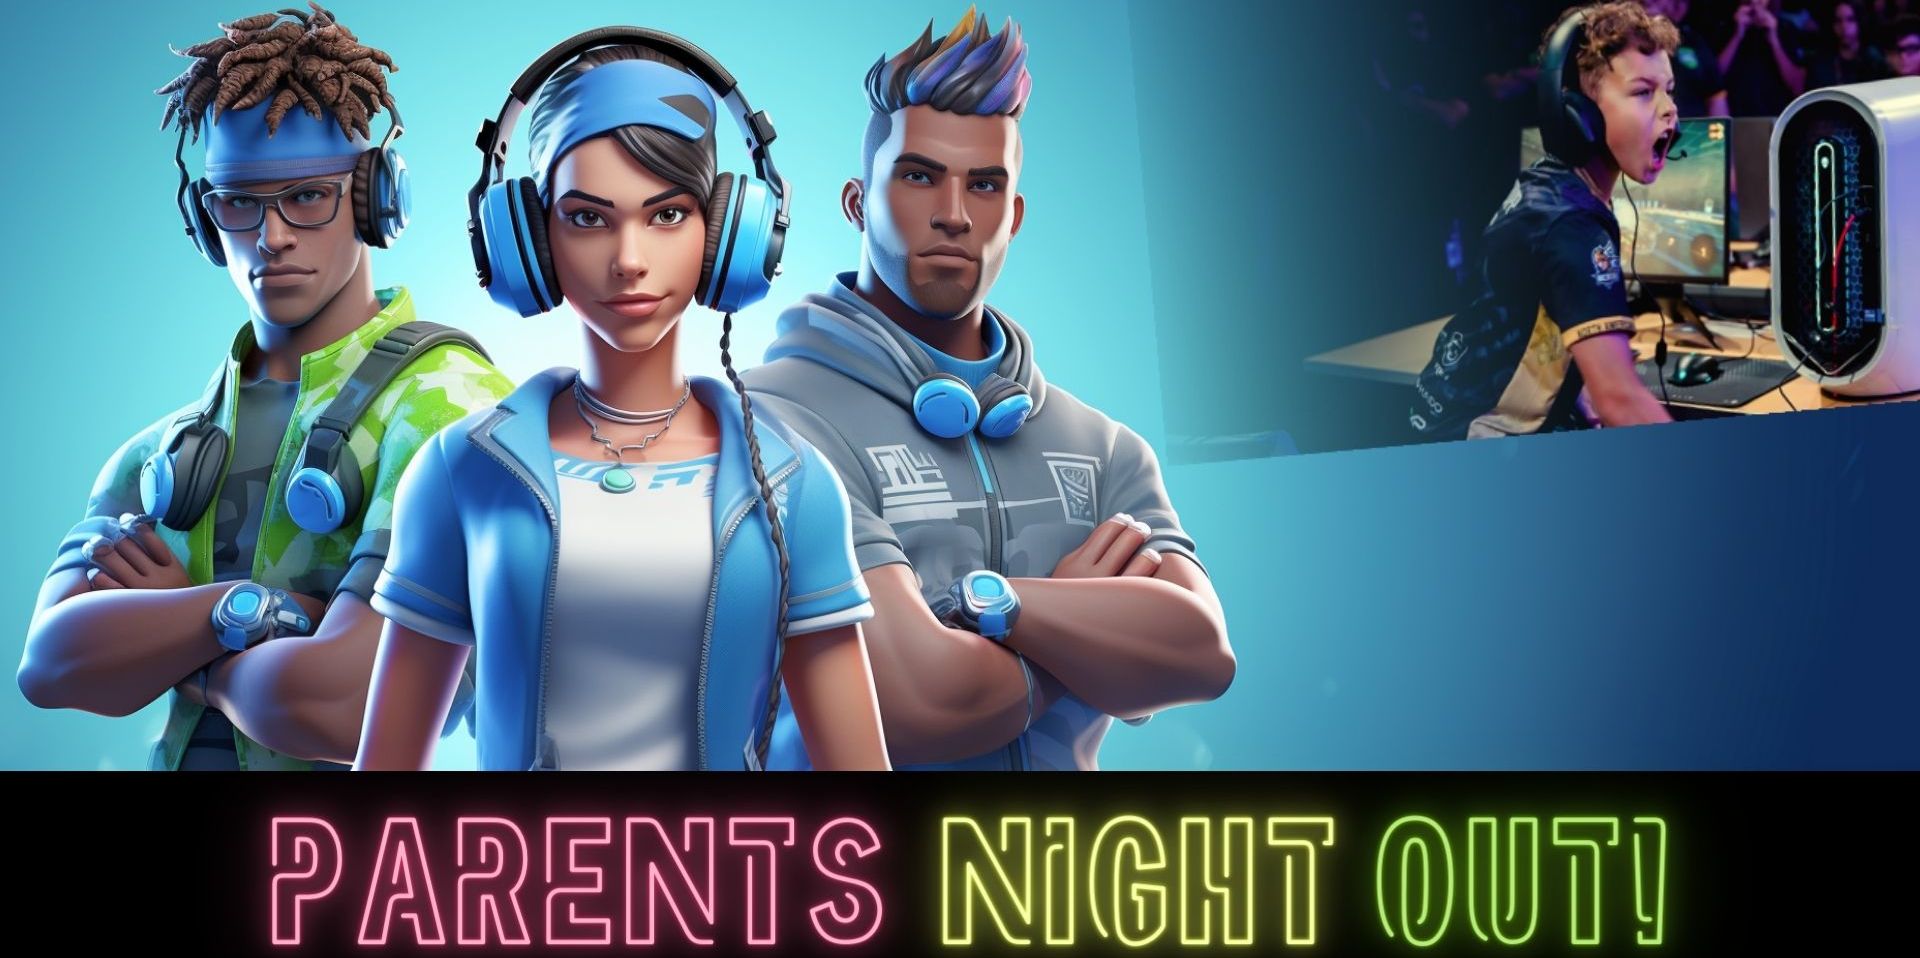 Parent's Night Out! XP League Asheville promotional image